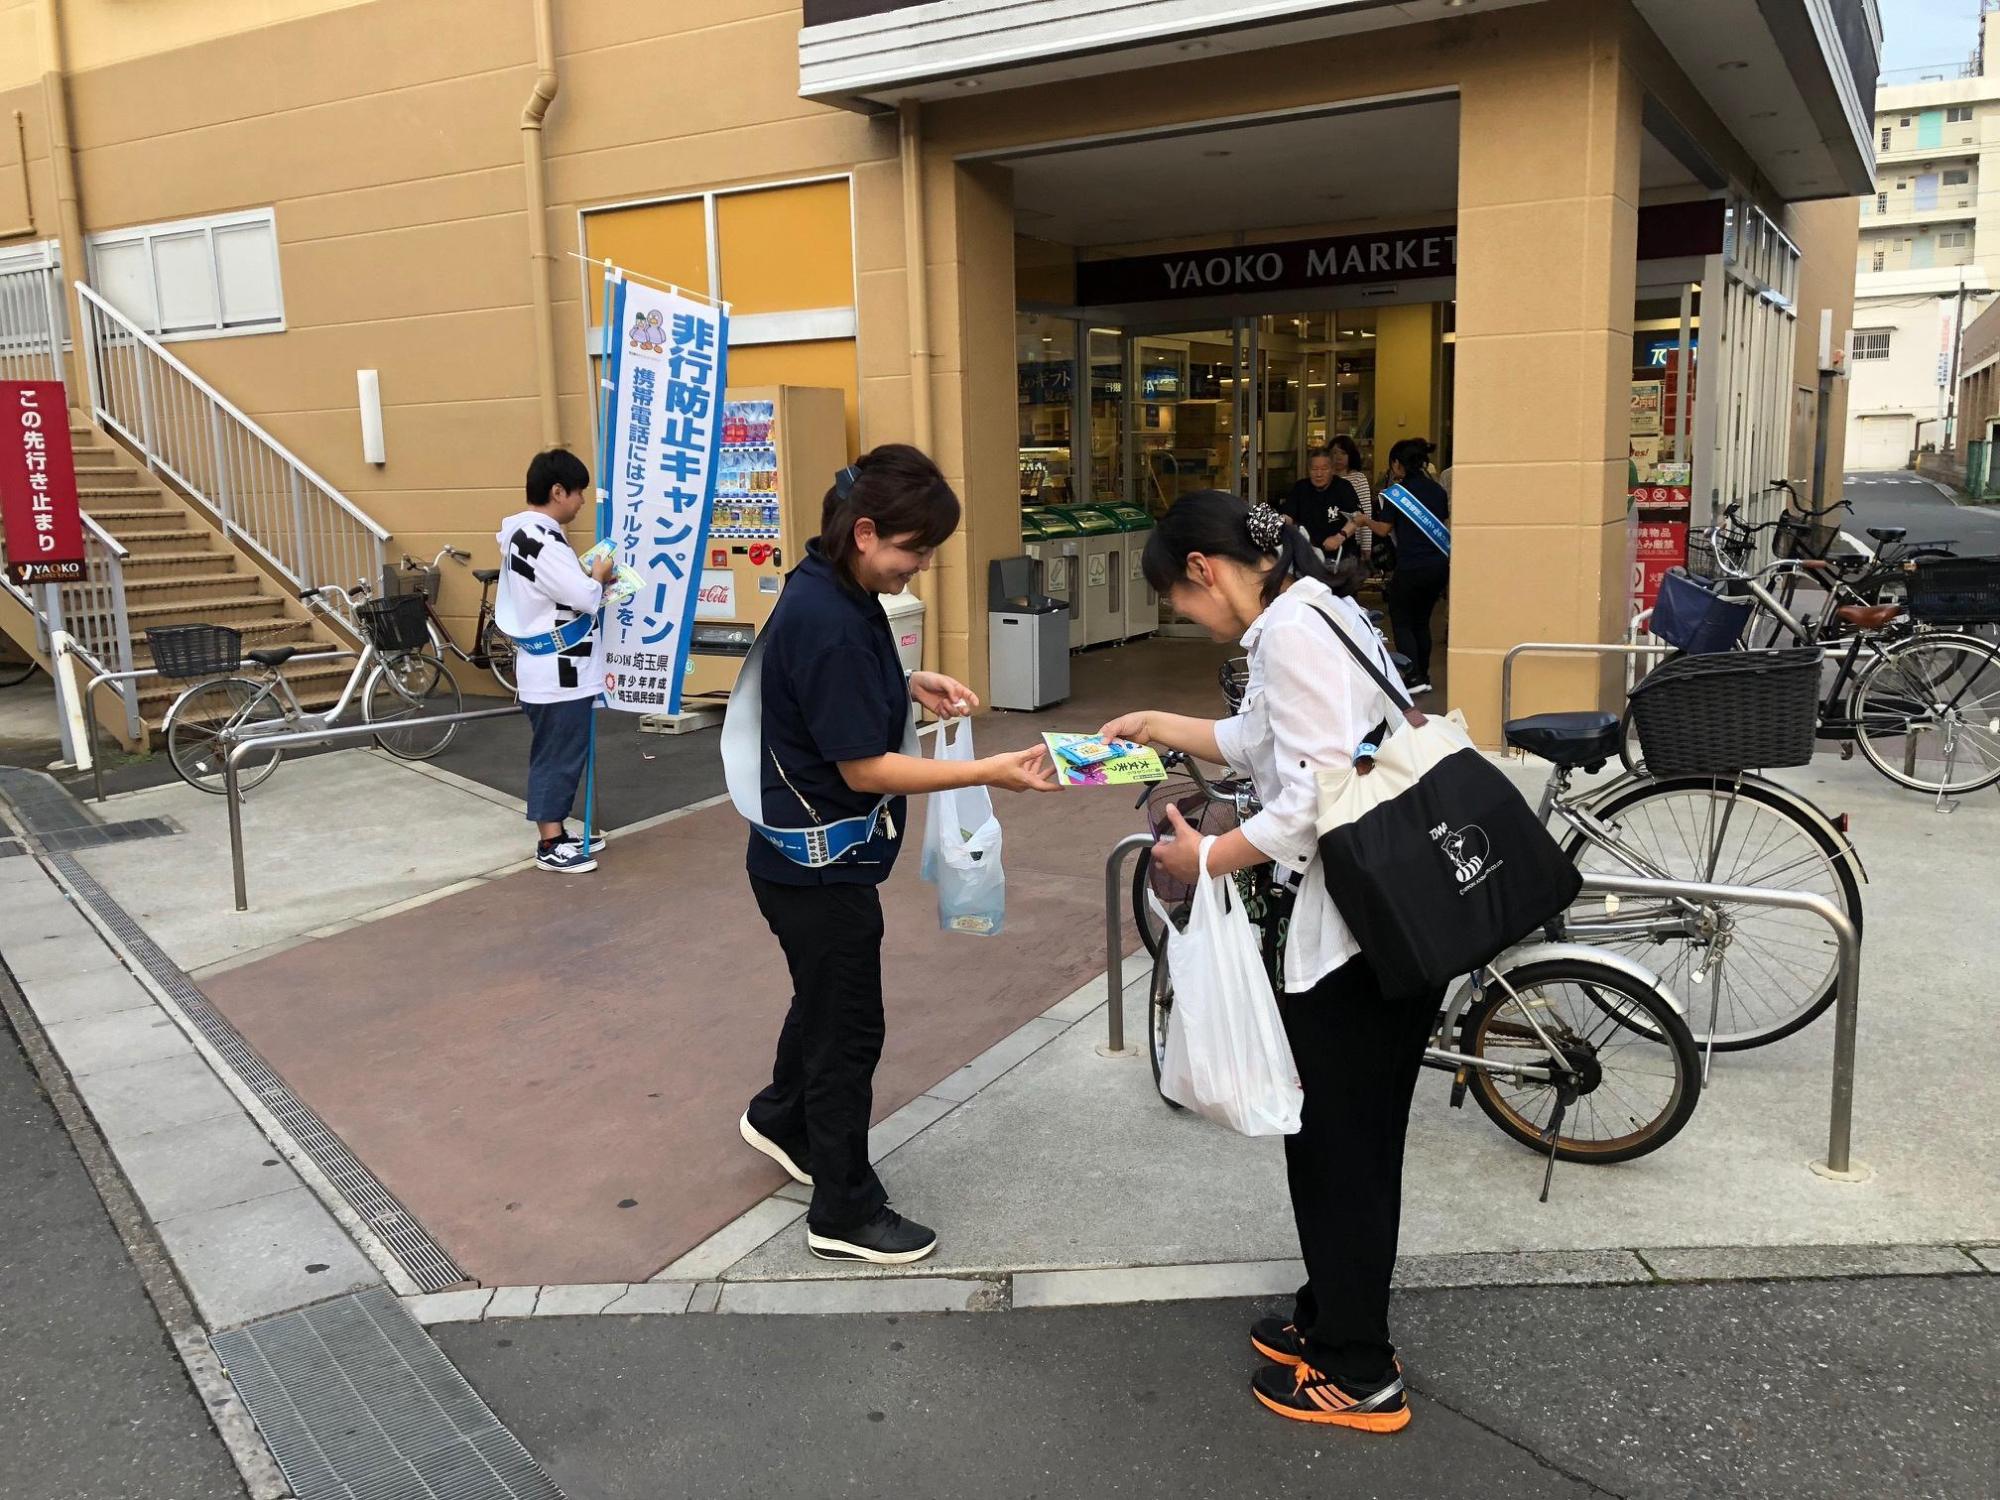 スーパーマーケットの入り口付近で非行防止キャンペーンののぼり旗をもって立っている男性と、キャンペーンのチラシを配っている女性の写真